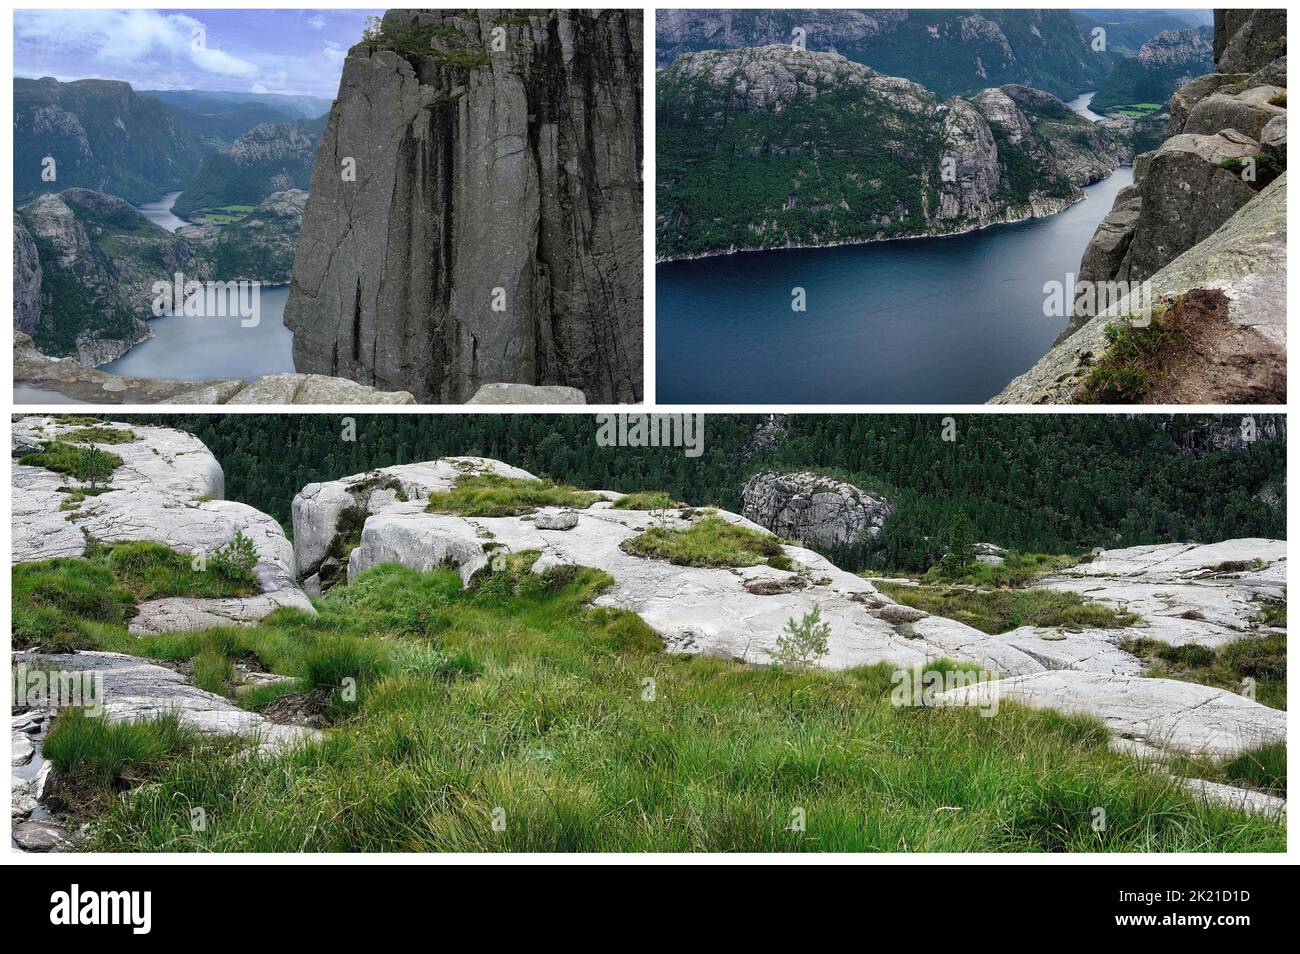 La nature idyllique des paysages norvégiens Banque D'Images